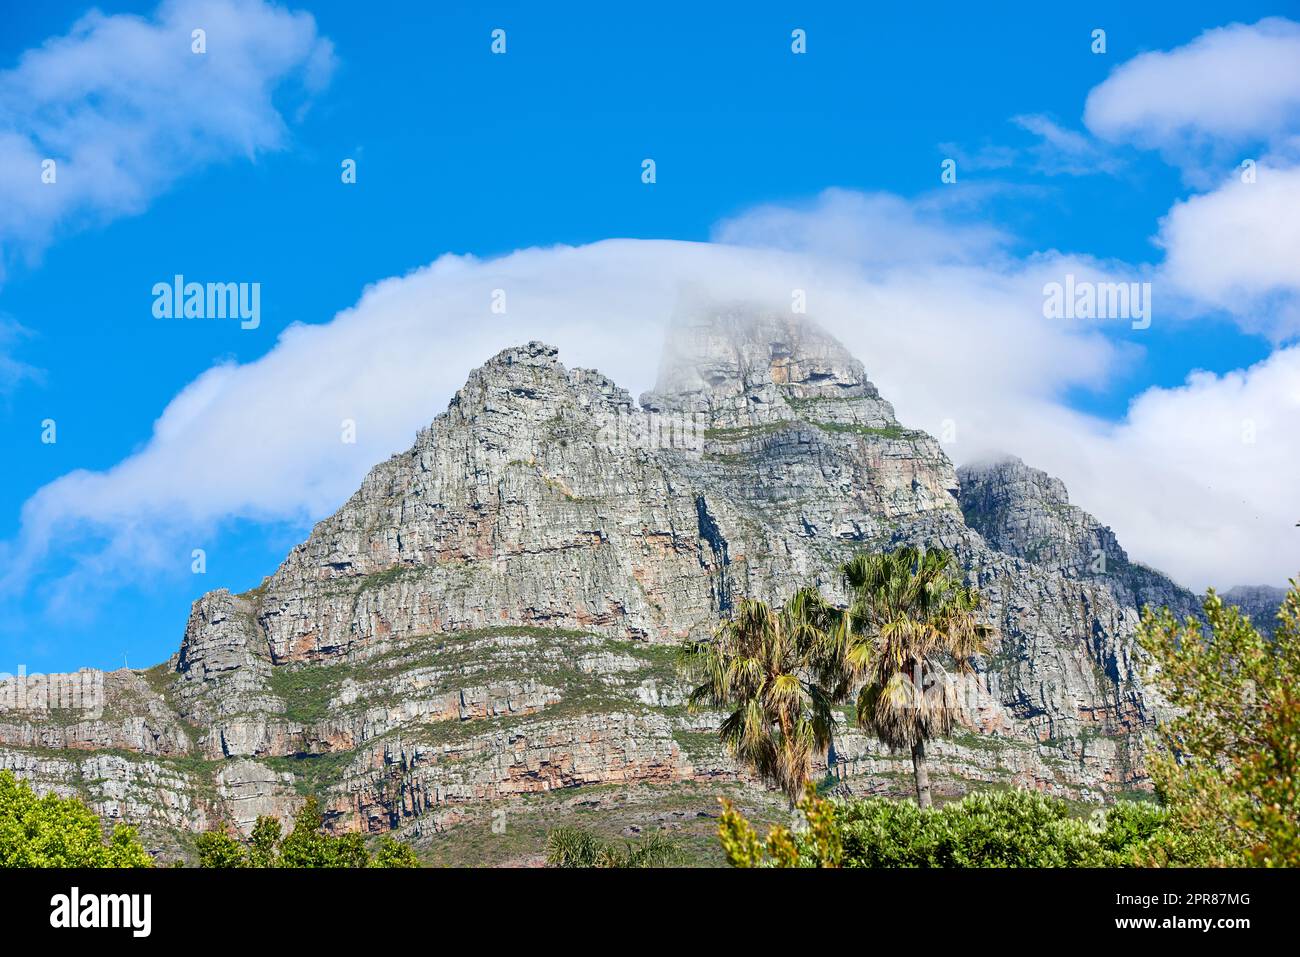 Montagne de Lions Head avec espace de texte ciel bleu ciel nuageux. Belle vue en contrebas d'un pic rocheux couvert de beaucoup de végétation verte luxuriante dans une destination touristique populaire à Cape Town, Afrique du Sud Banque D'Images